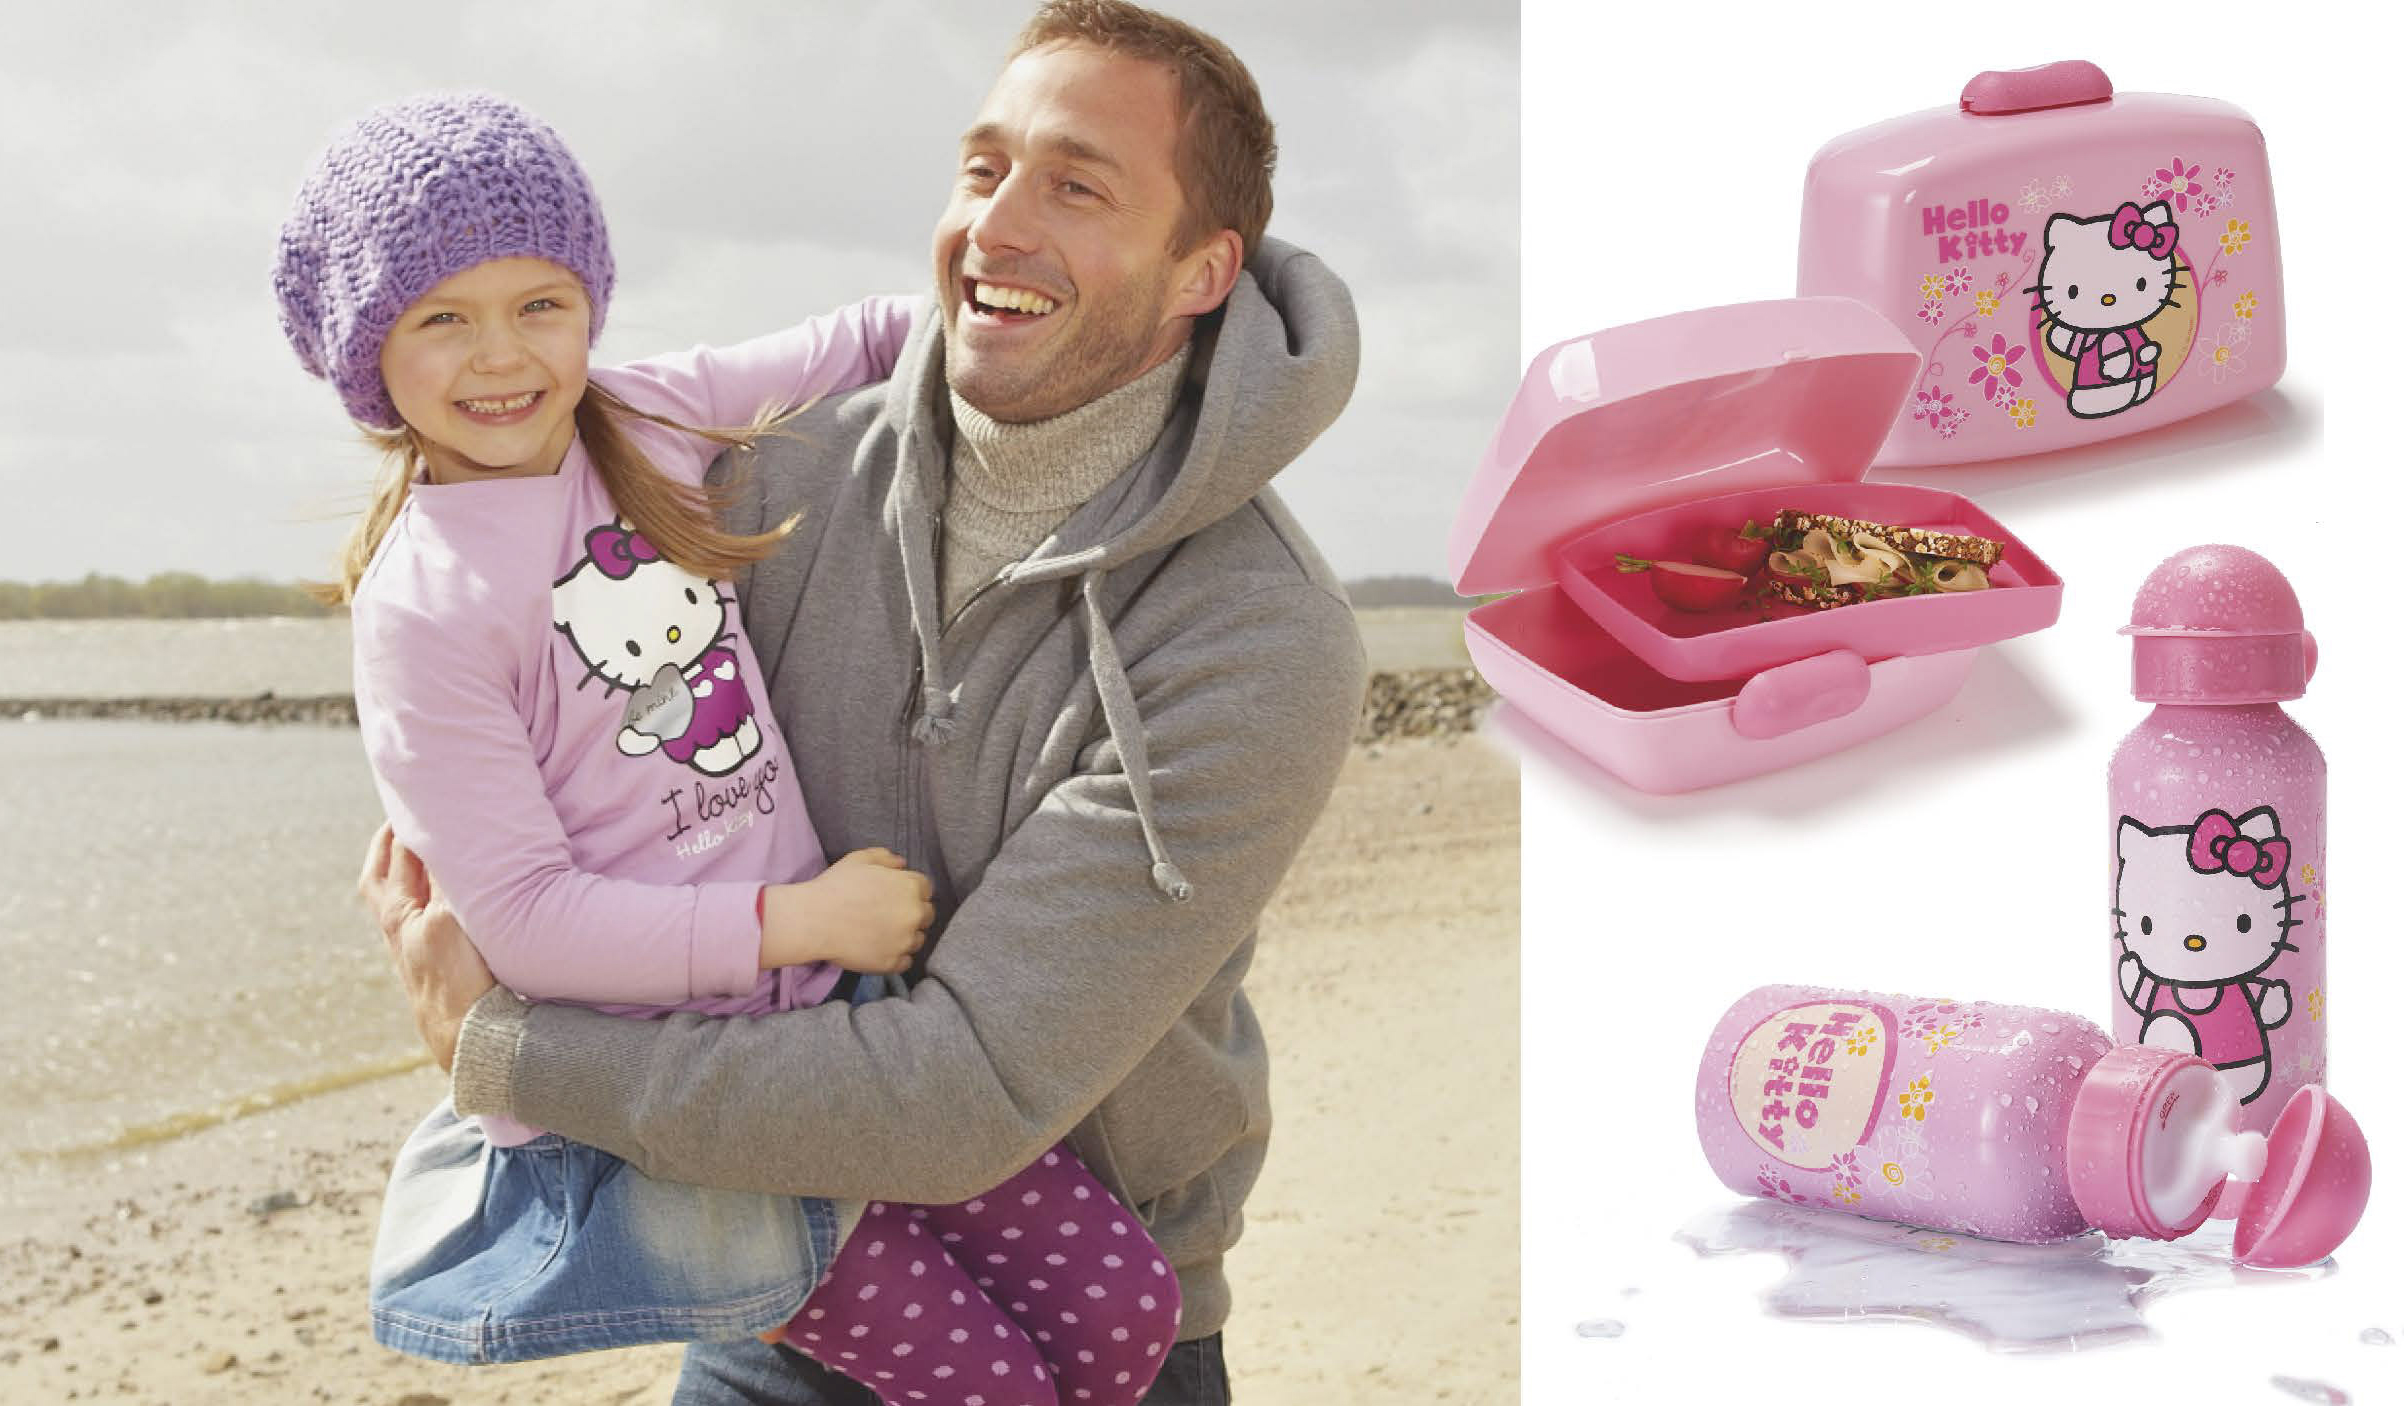 Ein fröhlicher Vater hält seine kleine Tochter an einem sonnigen Strand, beide lächeln. Rechts: Produkte mit Hello-Kitty-Motiv, darunter eine Lunchbox, eine Wasserflasche und ein offener Snackbehälter. © Fotografie Tomas Rodriguez